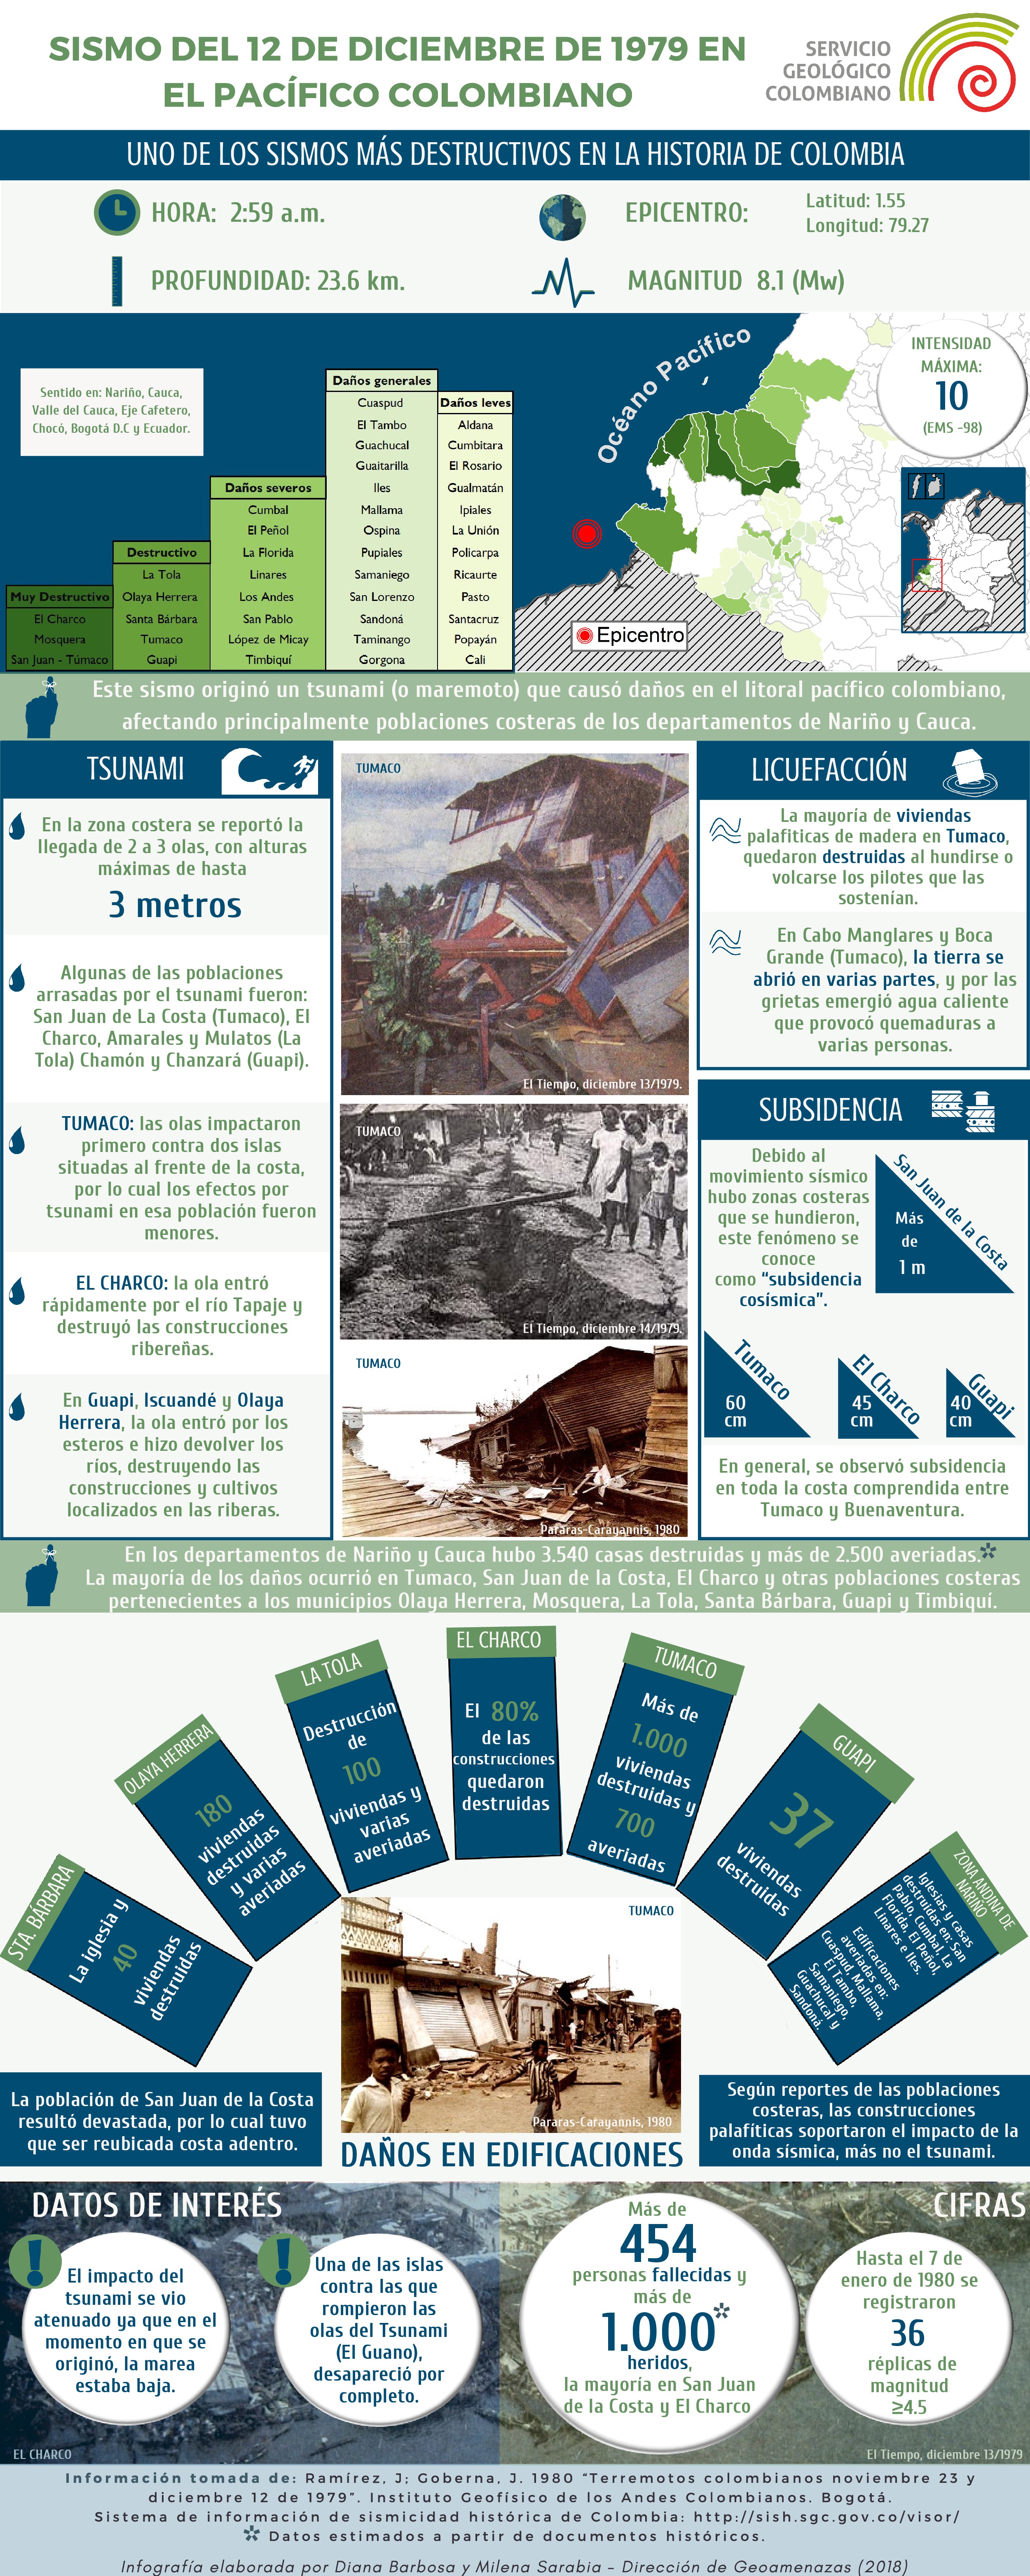 Infografía_sismo_12_12_1979_Costa Pacífica-page-0.jpg